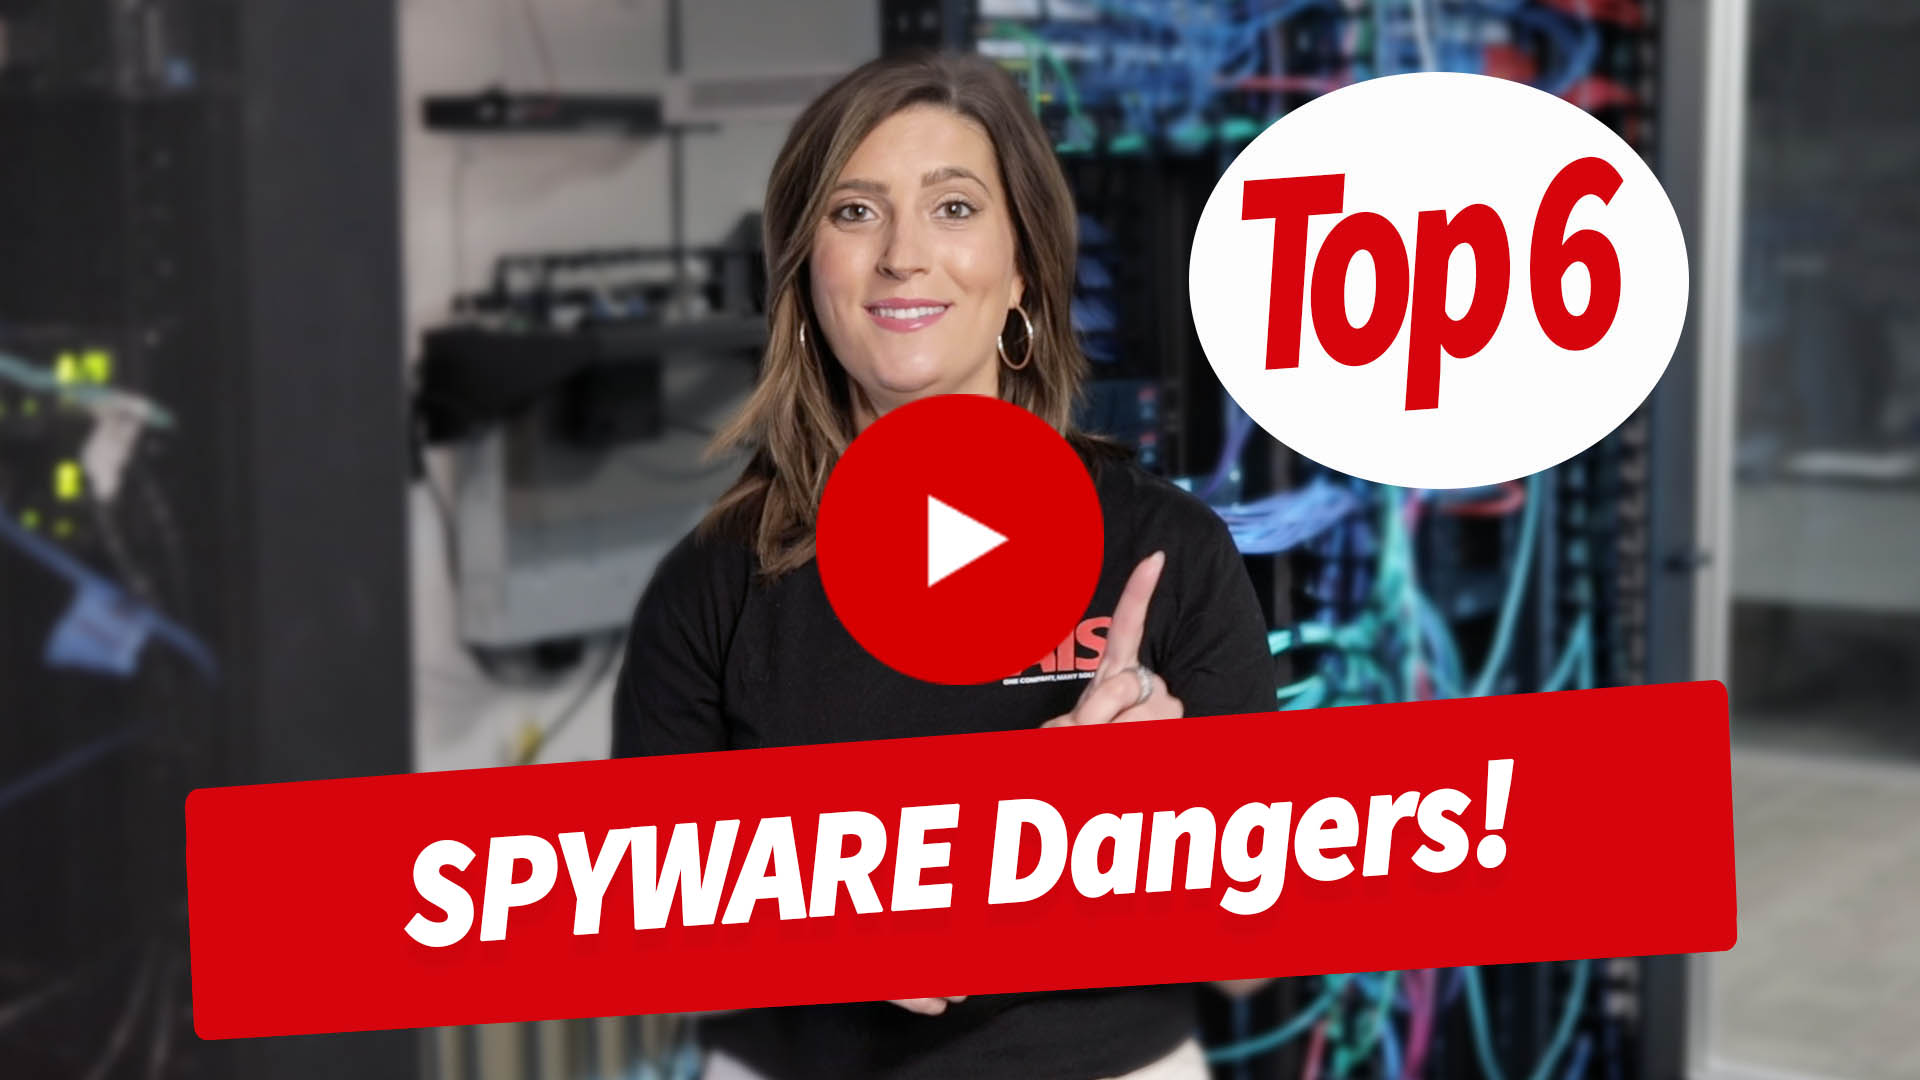 Top 6 Spyware Dangers